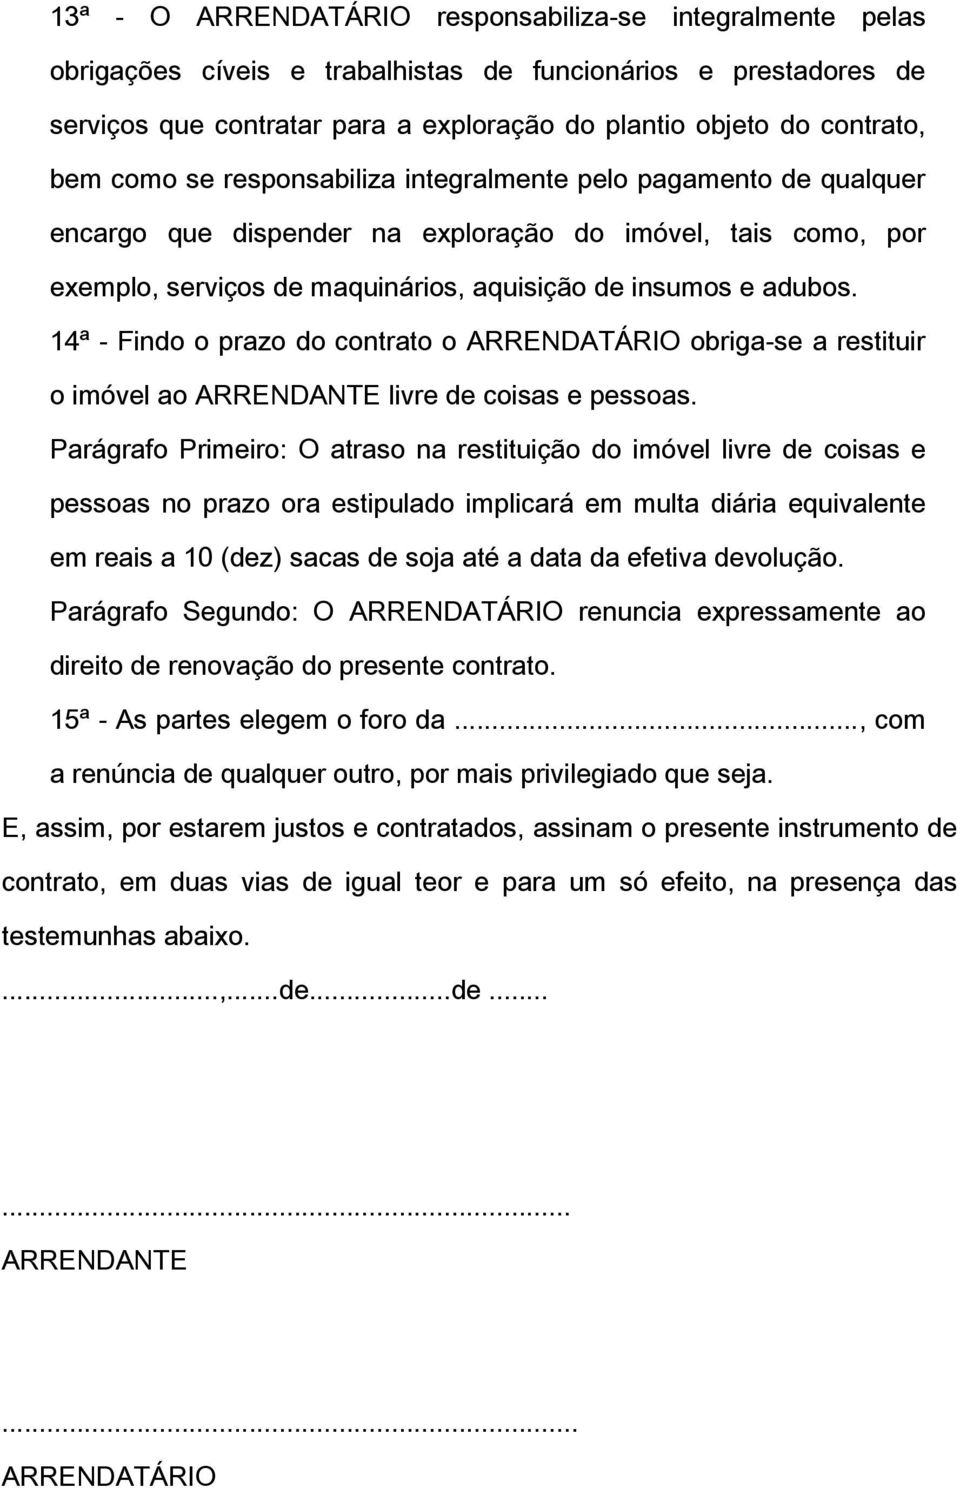 14ª - Findo o prazo do contrato o ARRENDATÁRIO obriga-se a restituir o imóvel ao ARRENDANTE livre de coisas e pessoas.